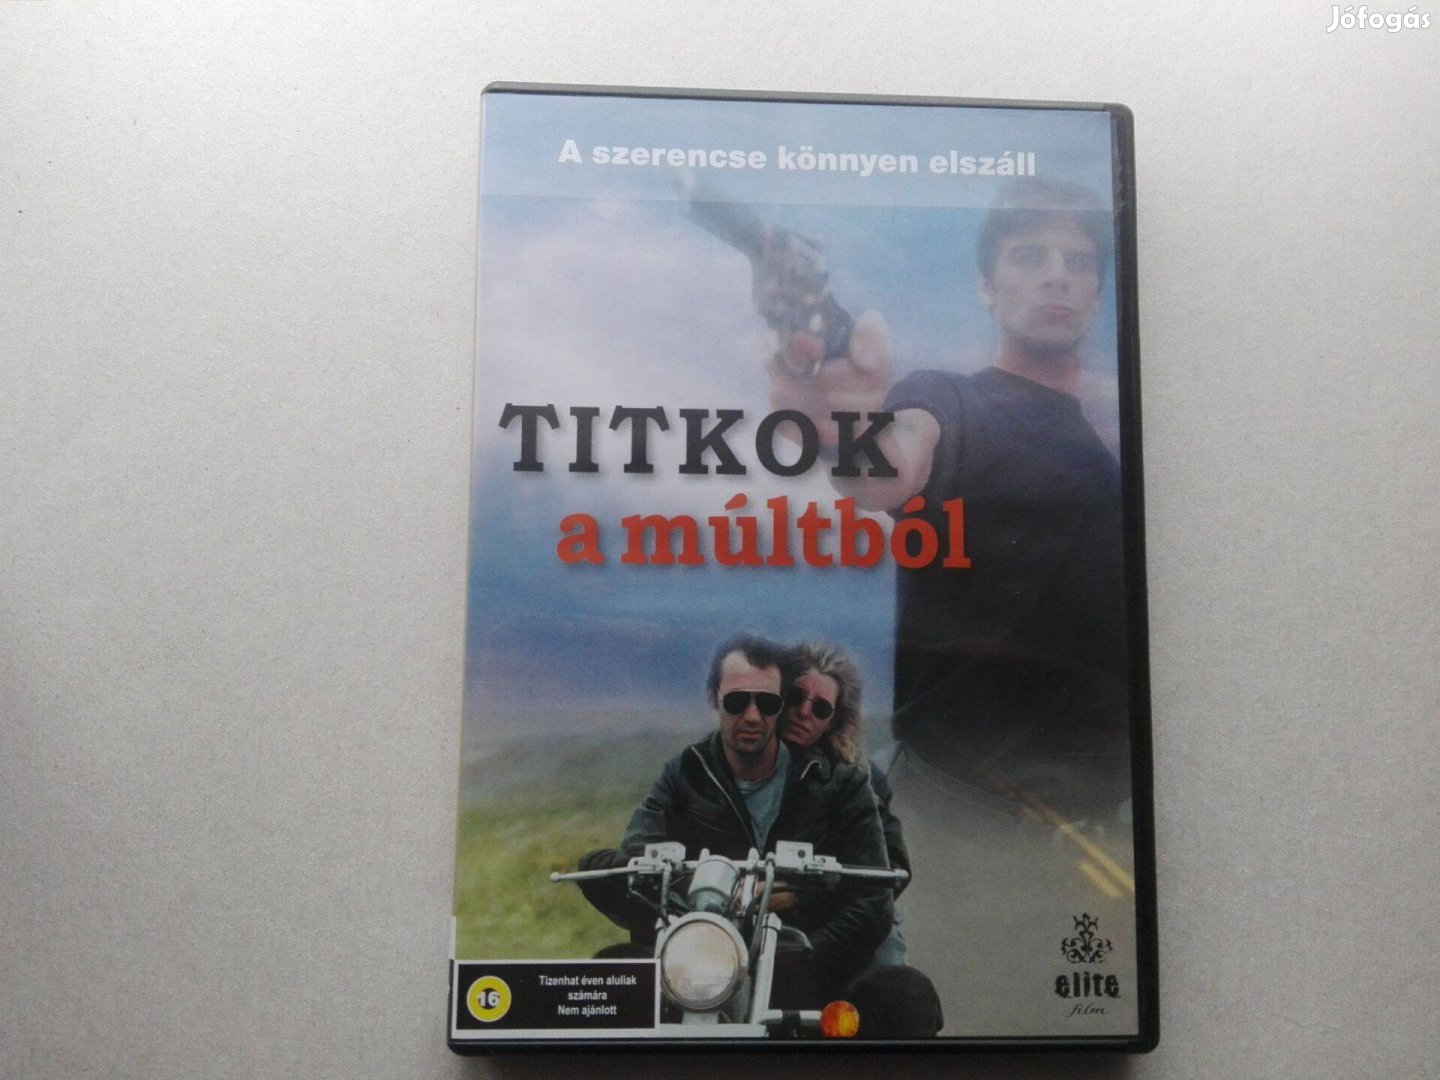 Titkok a múltból c.teljesen új, magyar nyelvű DVD film eladó